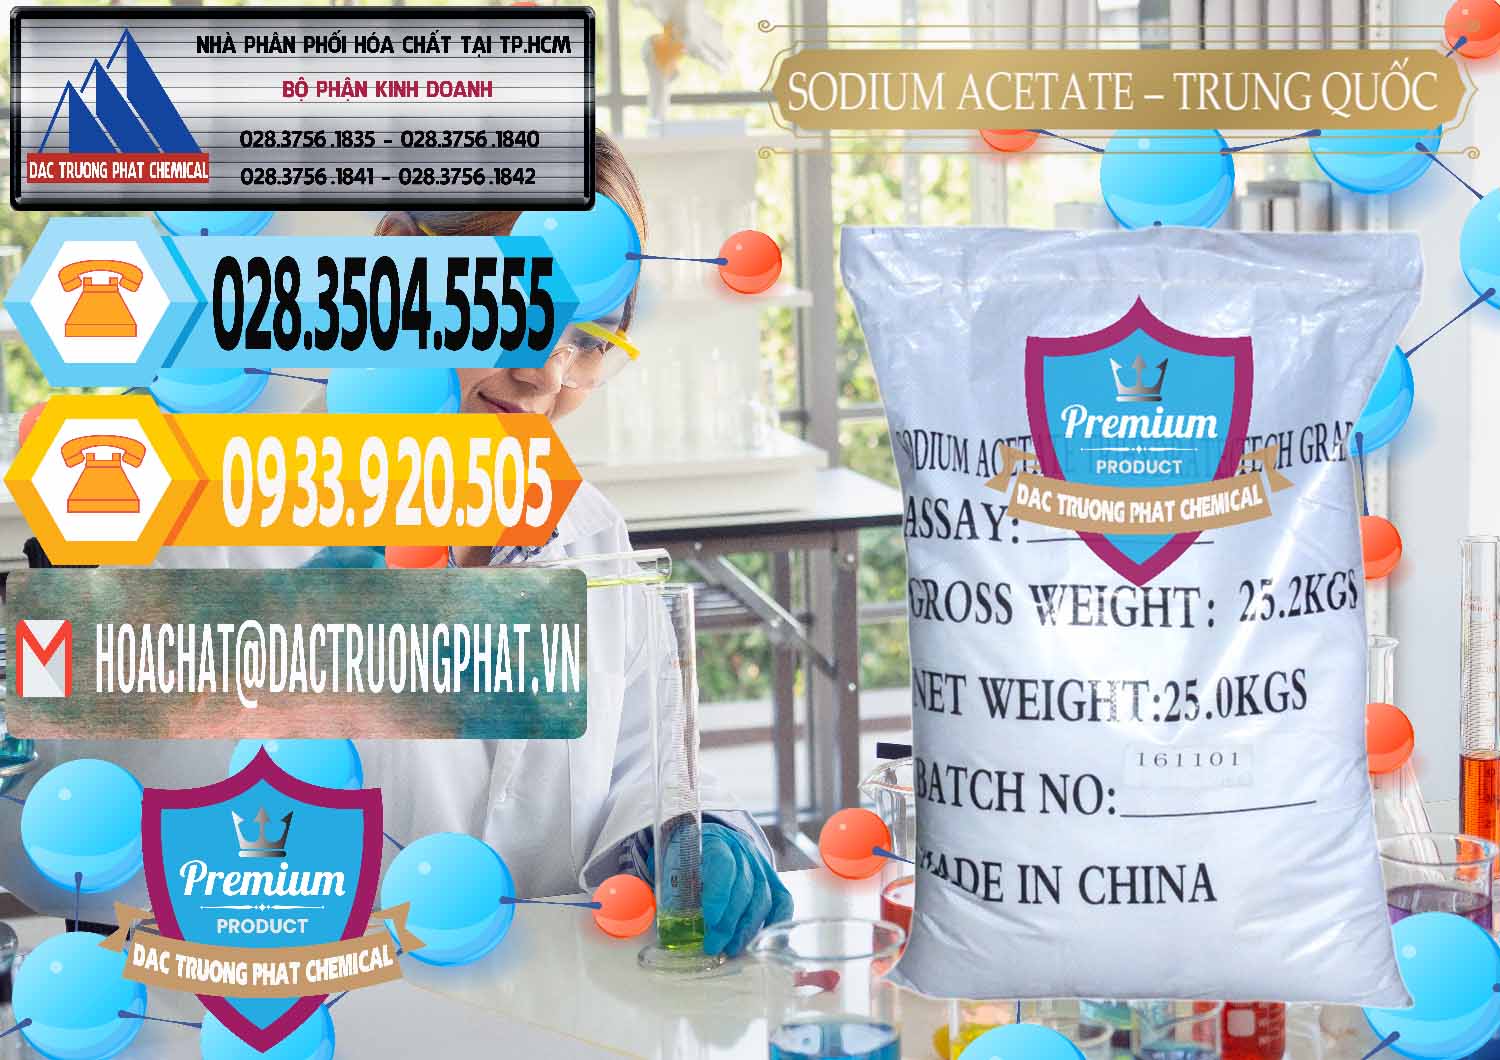 Nơi chuyên kinh doanh ( bán ) Sodium Acetate - Natri Acetate Trung Quốc China - 0134 - Nơi chuyên kinh doanh & phân phối hóa chất tại TP.HCM - hoachattayrua.net